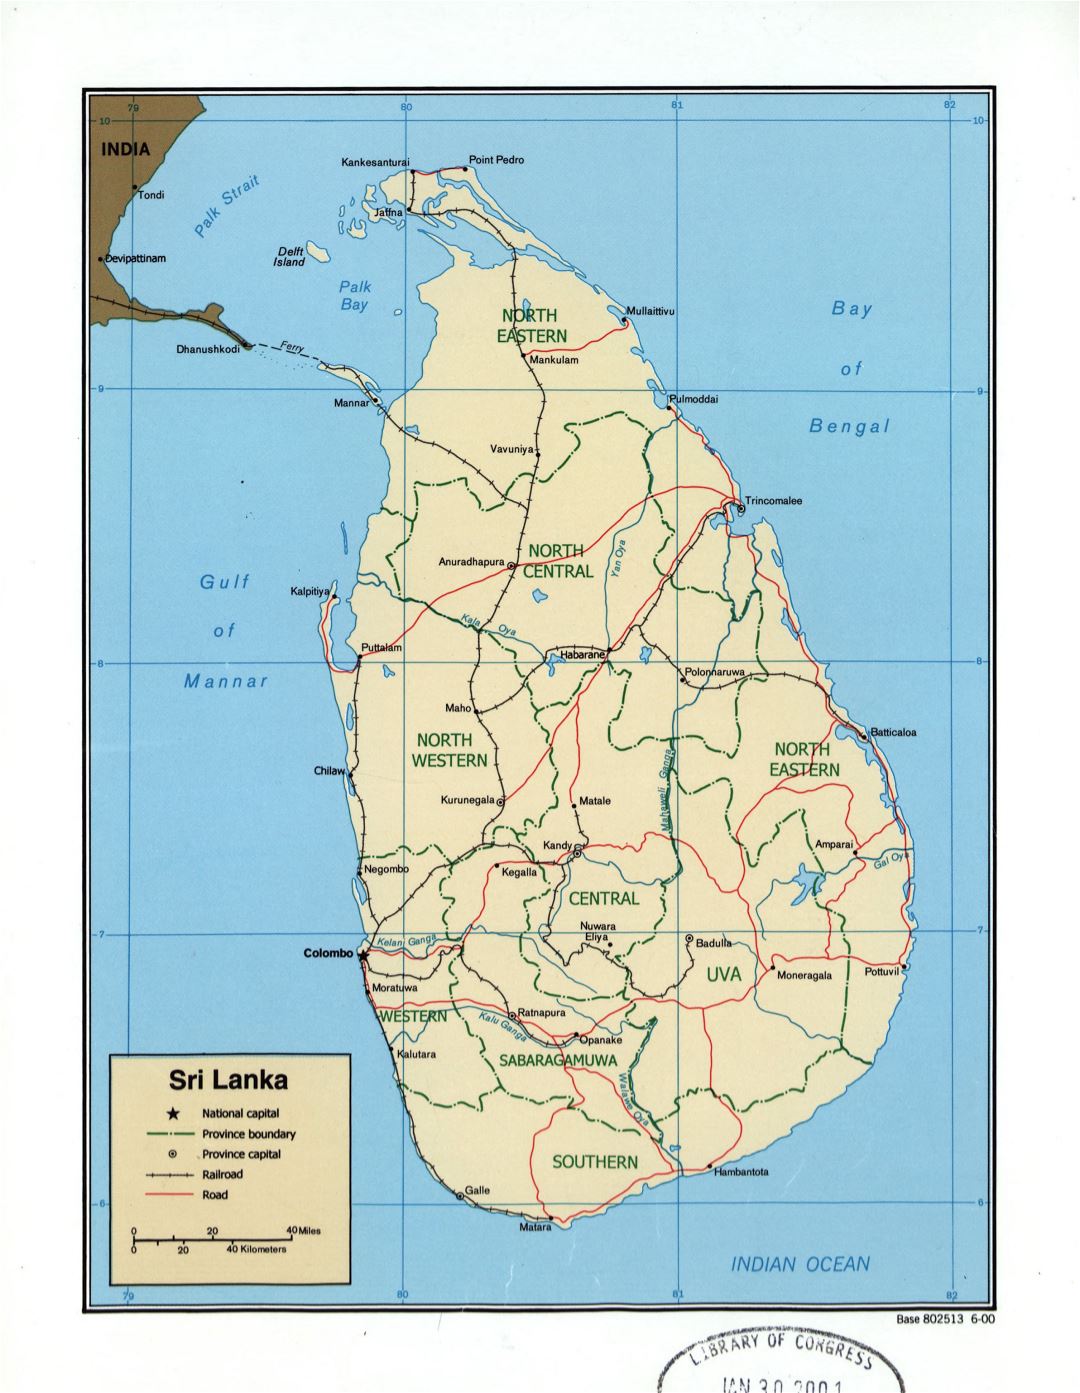 Grande detallado mapa político y administrativo de Sri Lanka con carreteras, ferrocarriles y principales ciudades - 2000